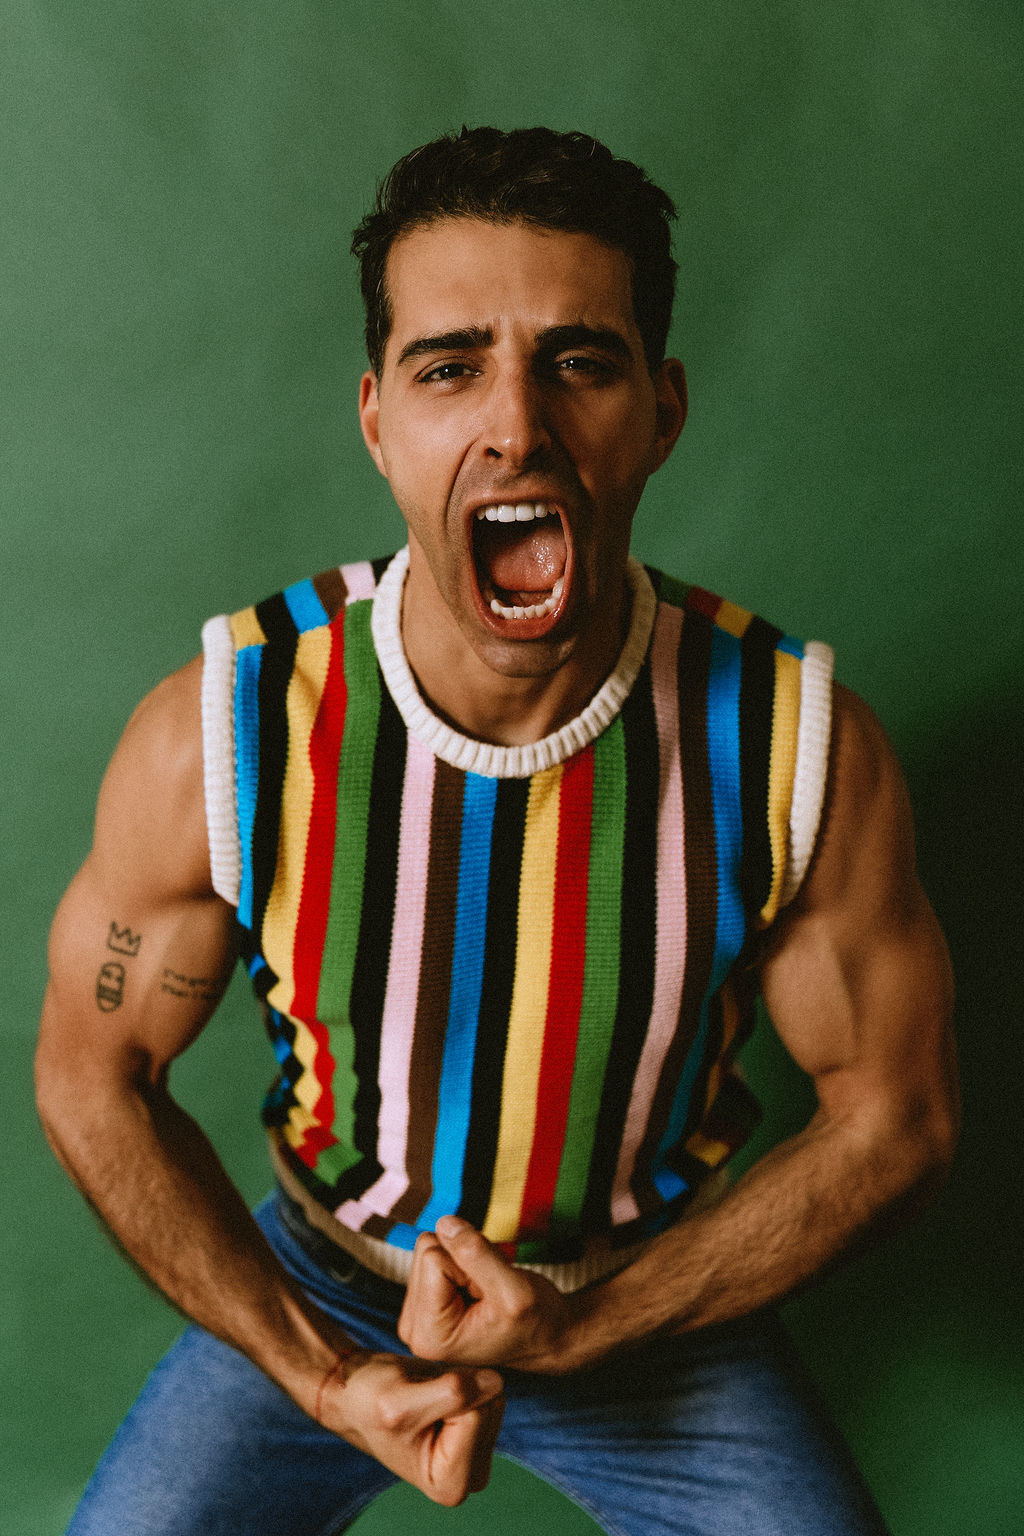 Samer Salem flexes in a colorful knit vest.